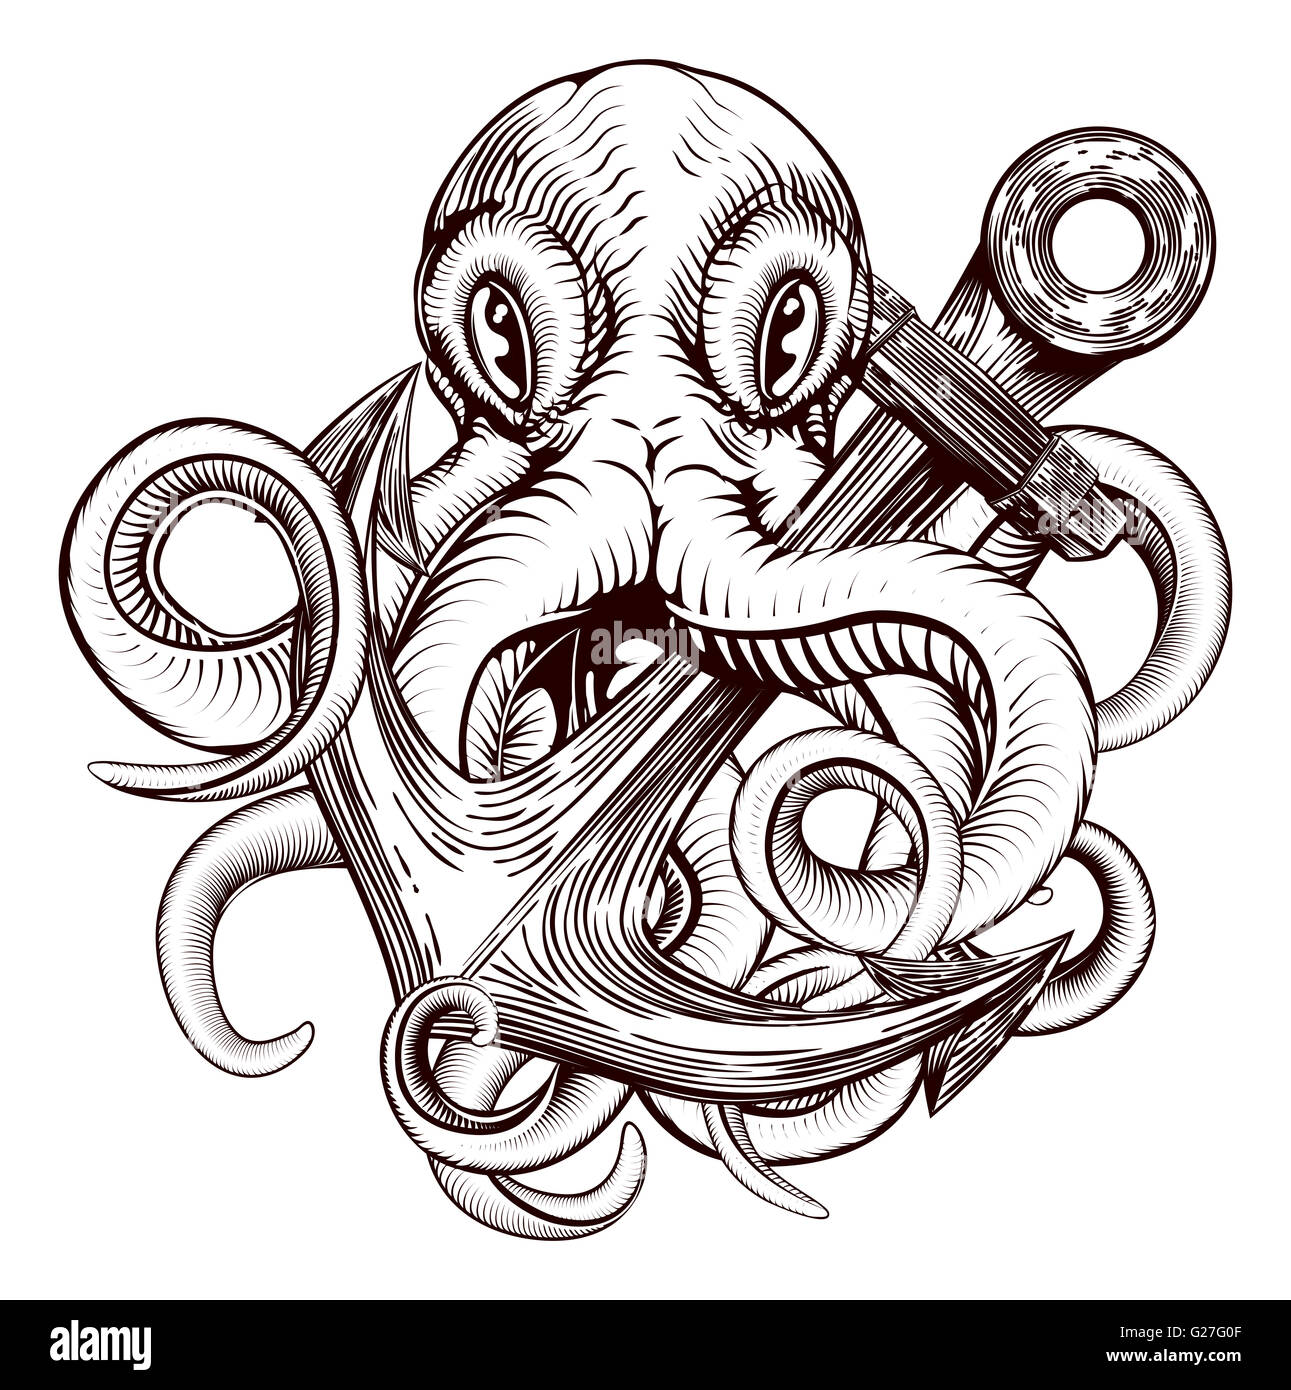 Une illustration originale d'un tatouage d'une pieuvre tenant une ancre de navire dans un style vintage sur bois Banque D'Images